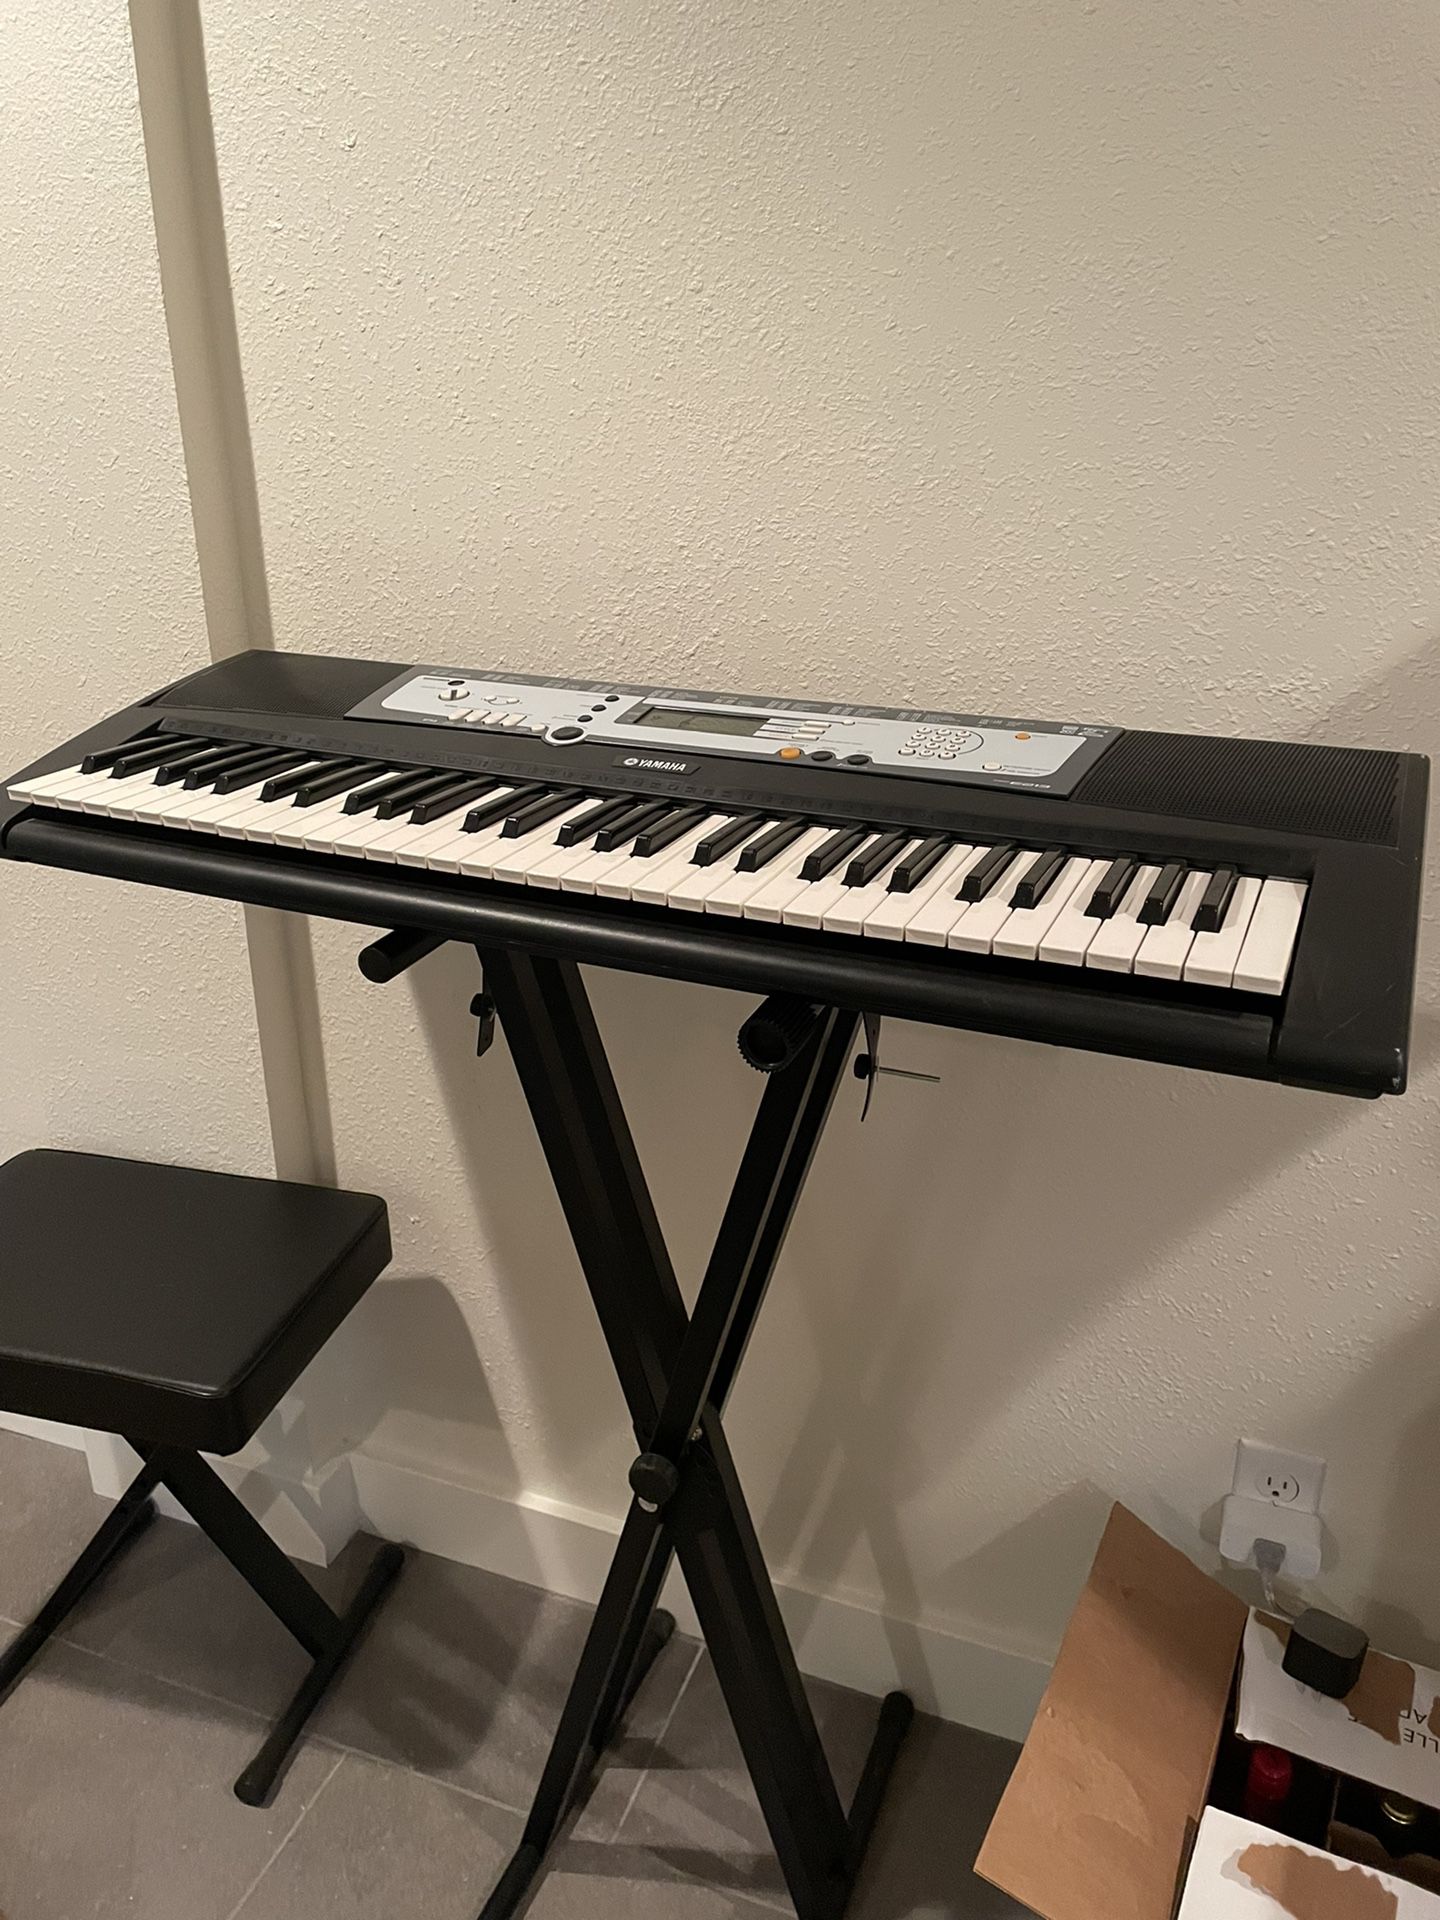 Yamaha Piano keyboard, Stand, Stool, Pedal, Headset